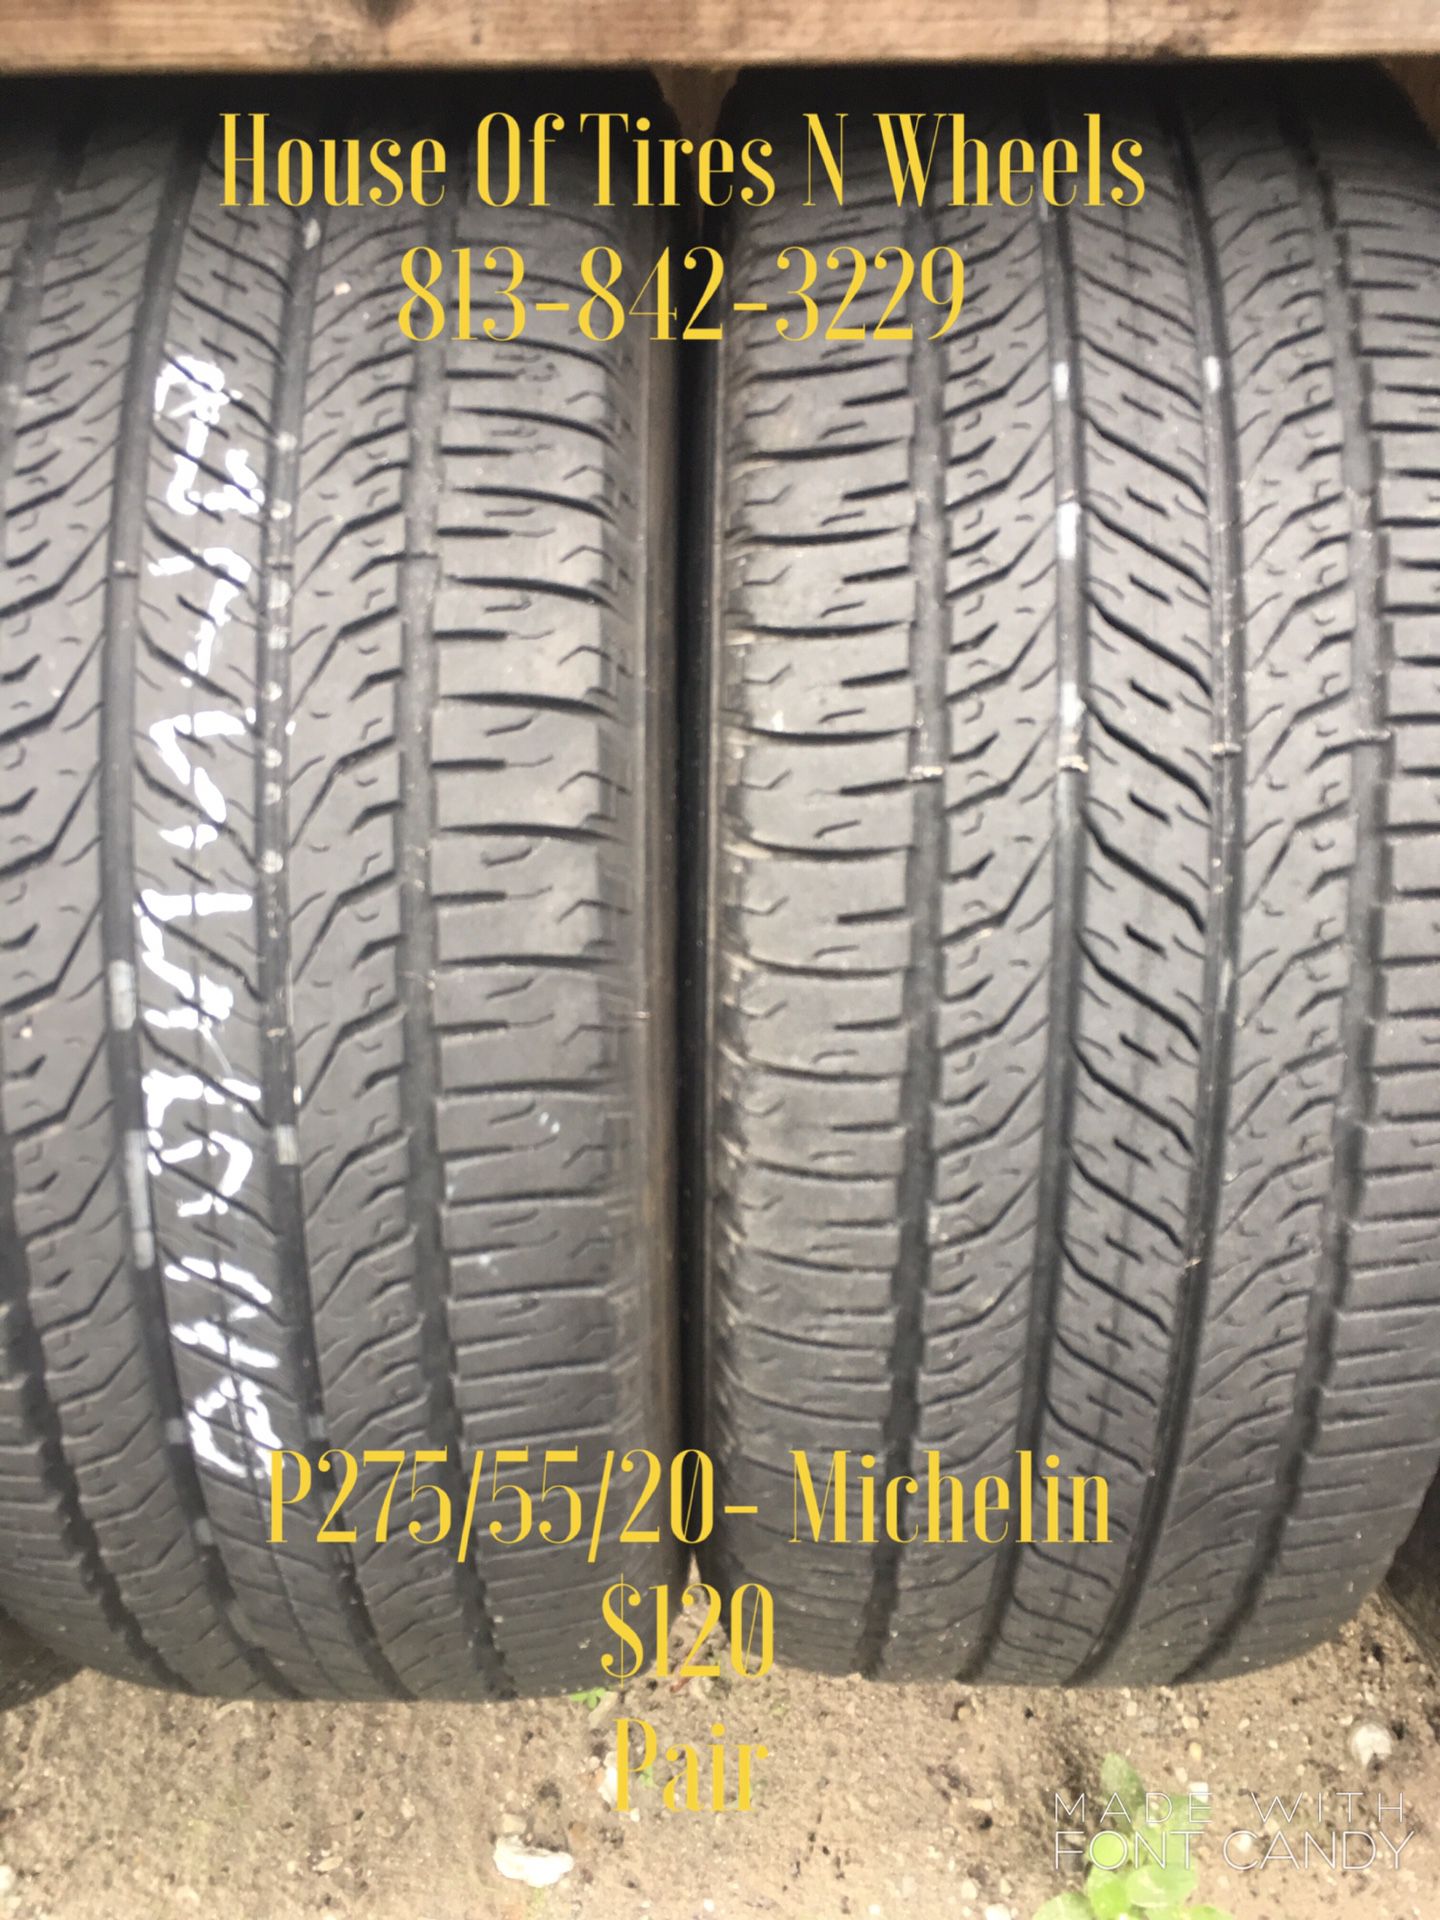 275/55/20- Michelin